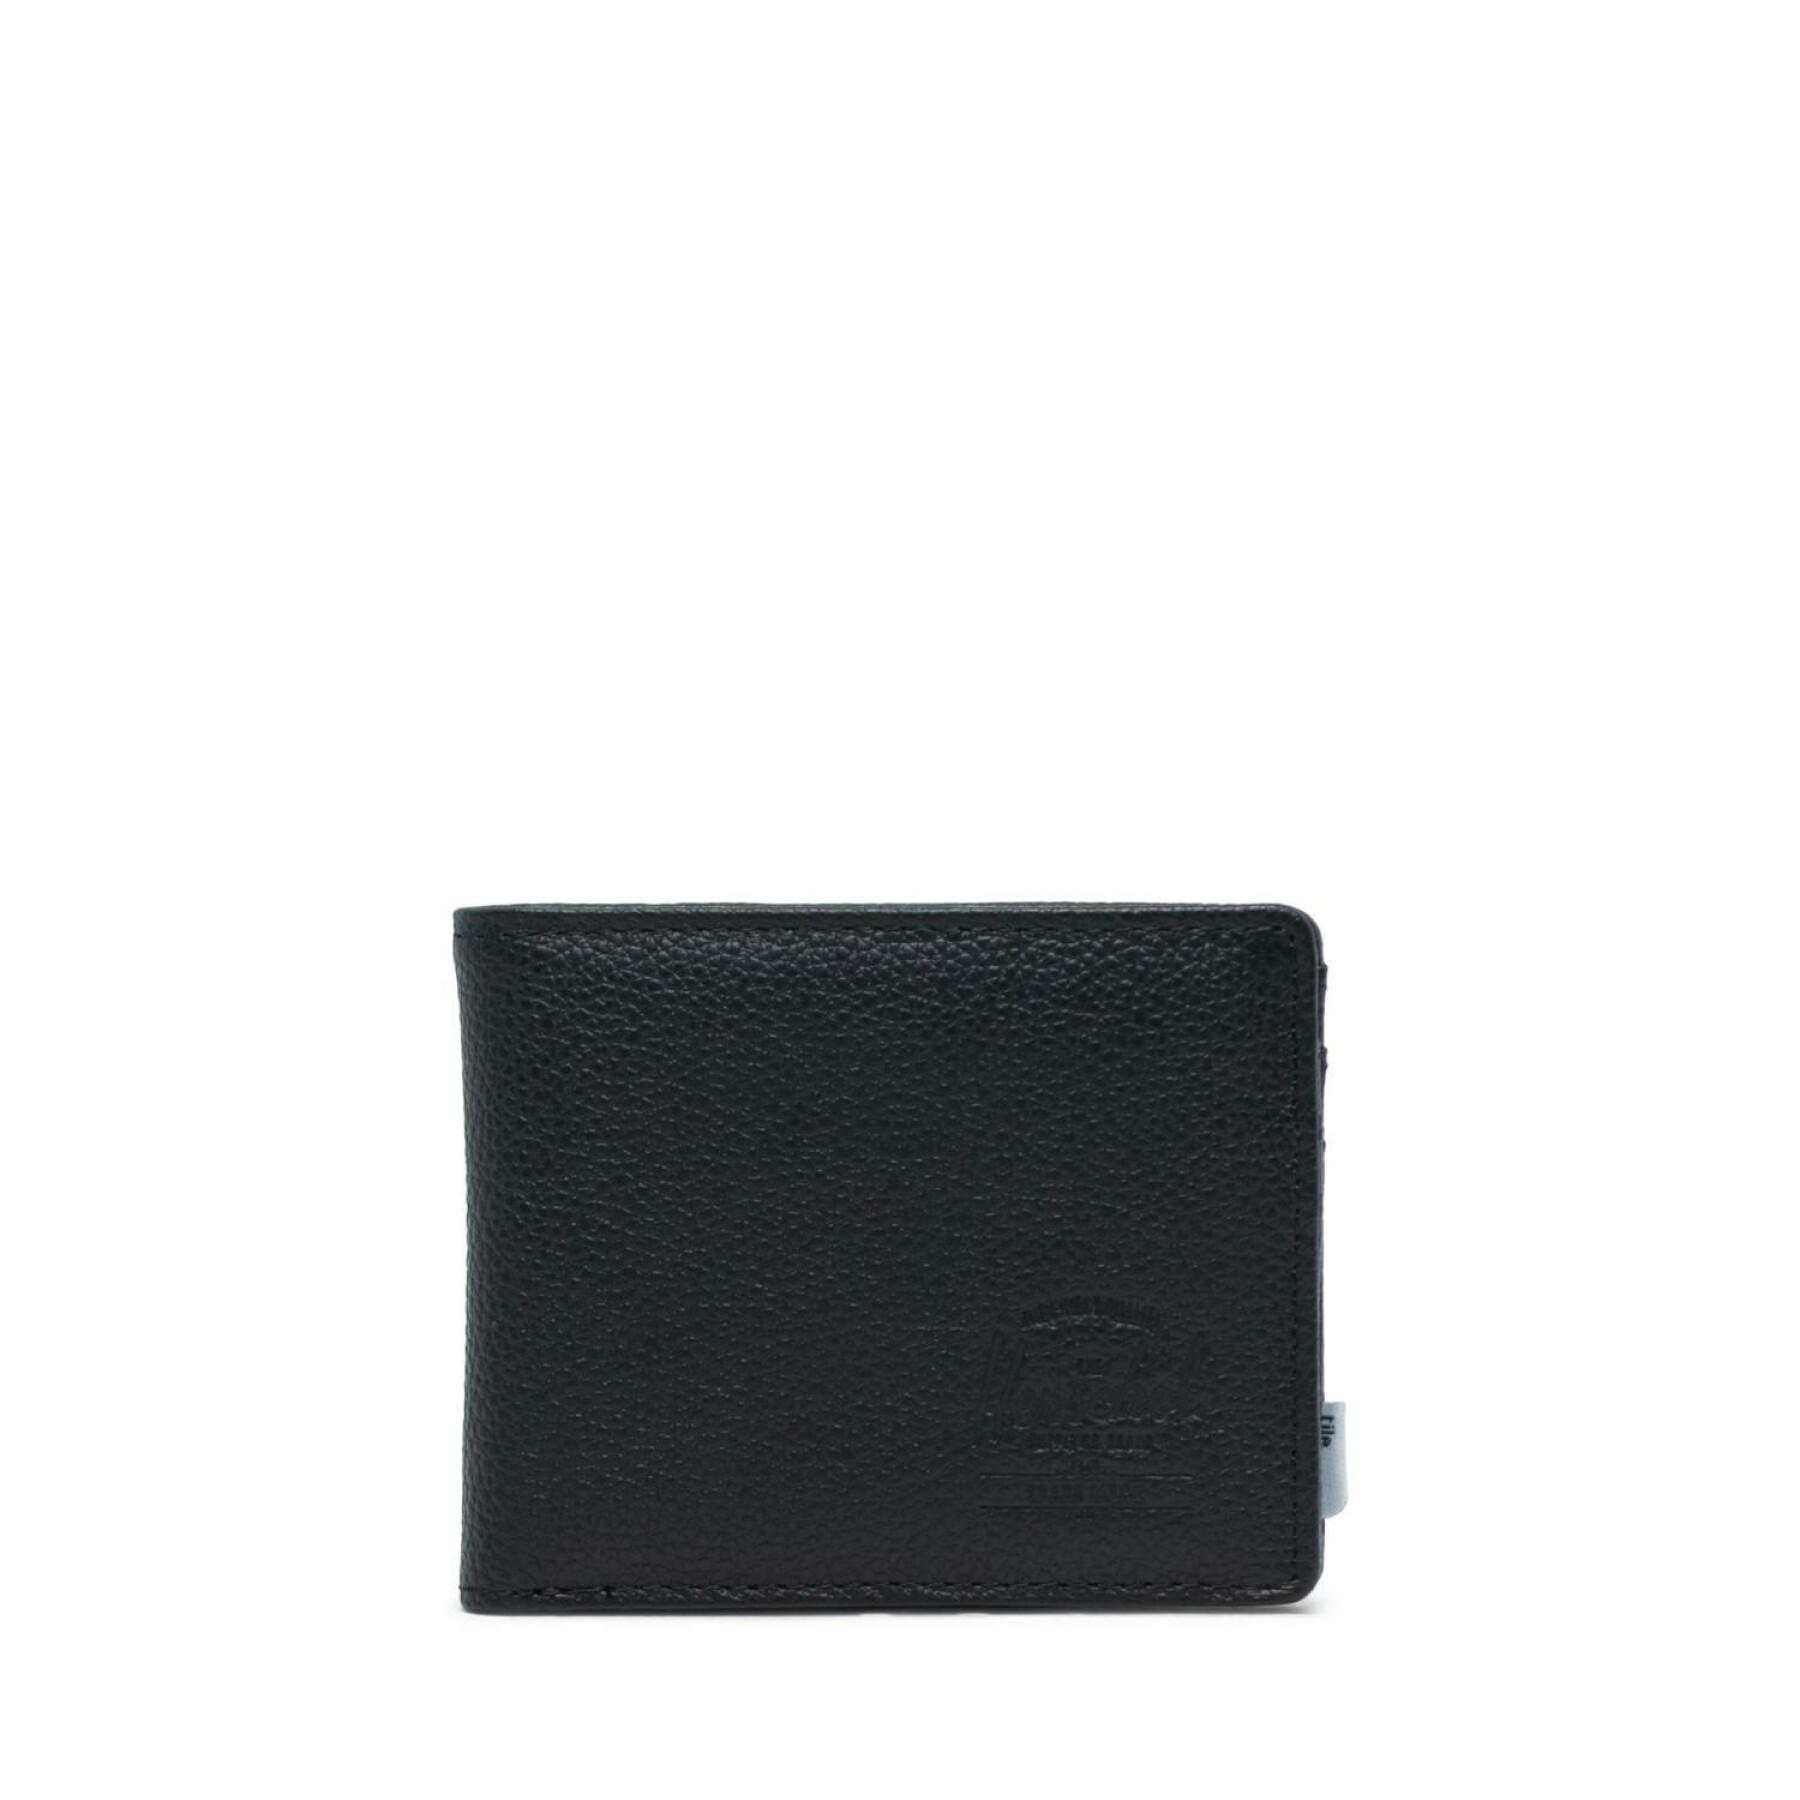 Portfólio Herschel black pebbled leather